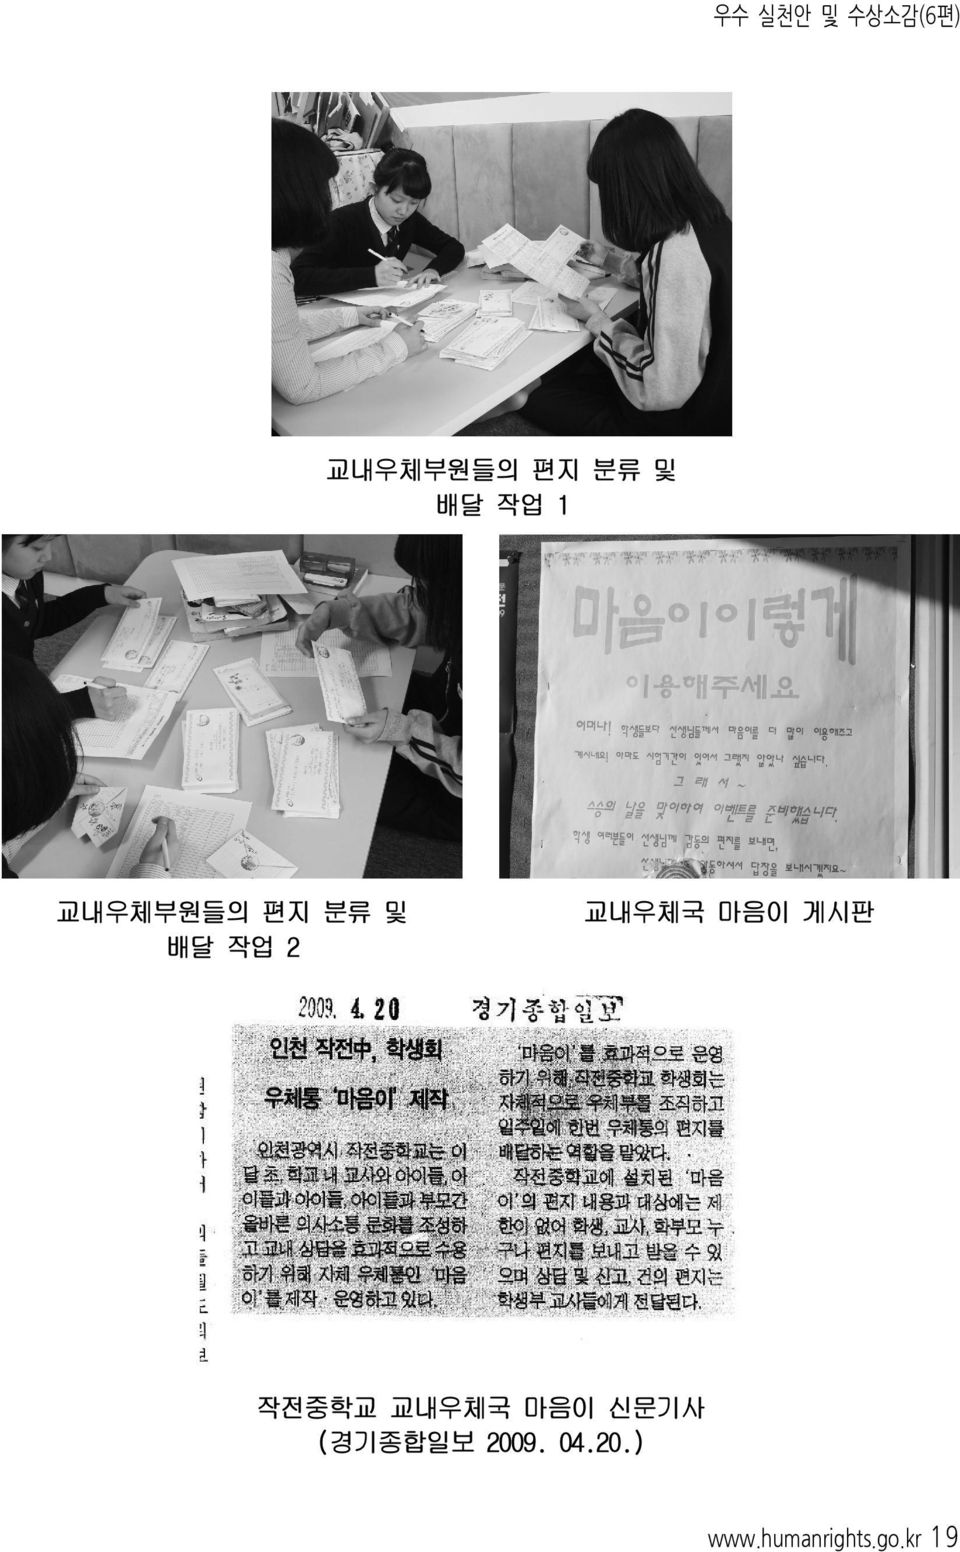 마음이 게시판 작전중학교 교내우체국 마음이 신문기사 (경기종합일보